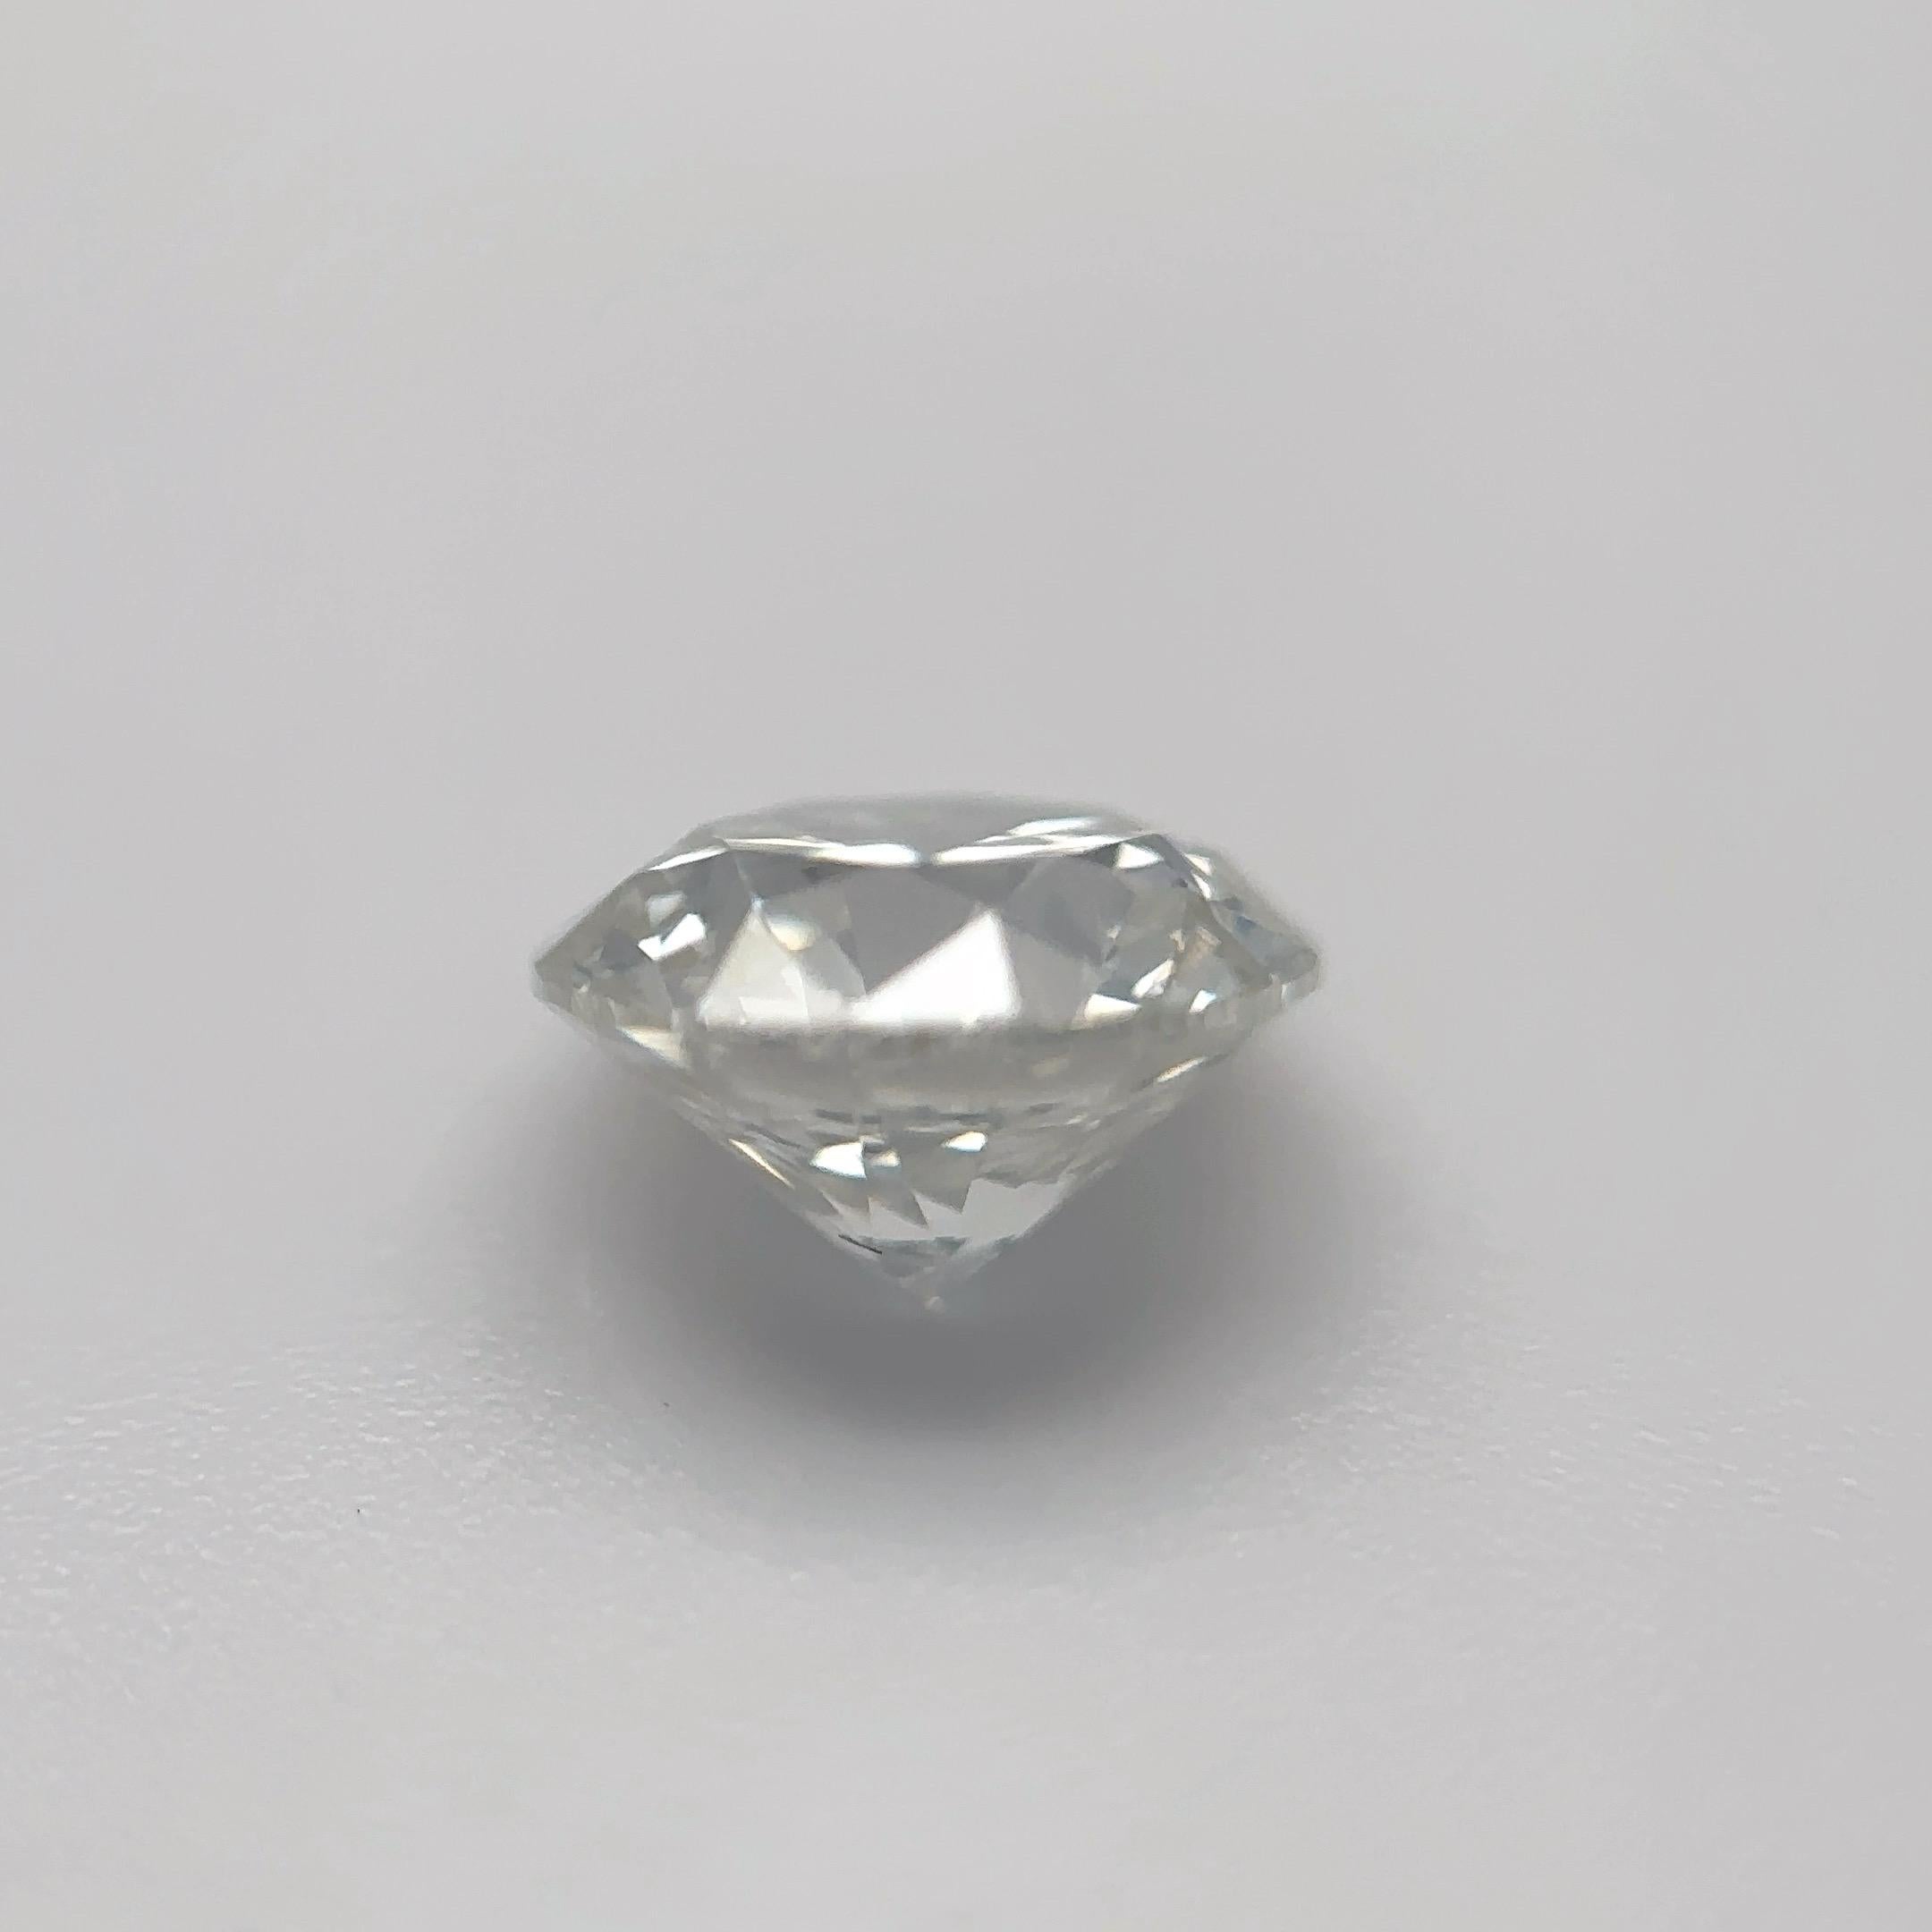 GIA Certified 1.06 Carat Round Brilliant Natural Diamond Loose Stone (Customization Option)

Couleur : H
Clarté : SI1

Idéal pour les bagues de fiançailles, les alliances, les colliers et les boucles d'oreilles en diamant. Contactez-nous pour